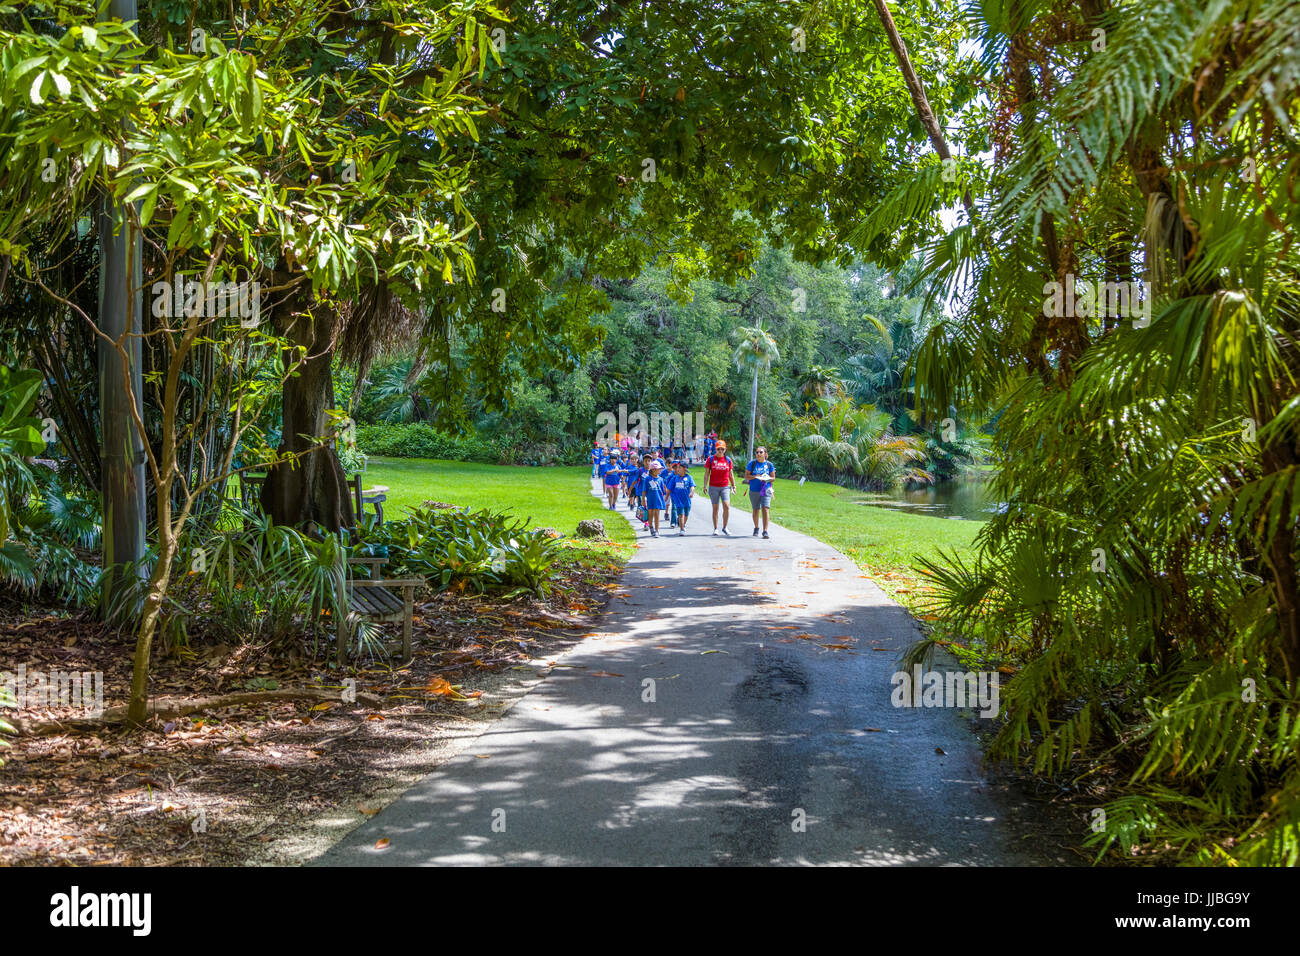 Fairchild Tropical Botanic Garden an 83 acre tropical botanical garden in Coral Gables Florida Stock Photo